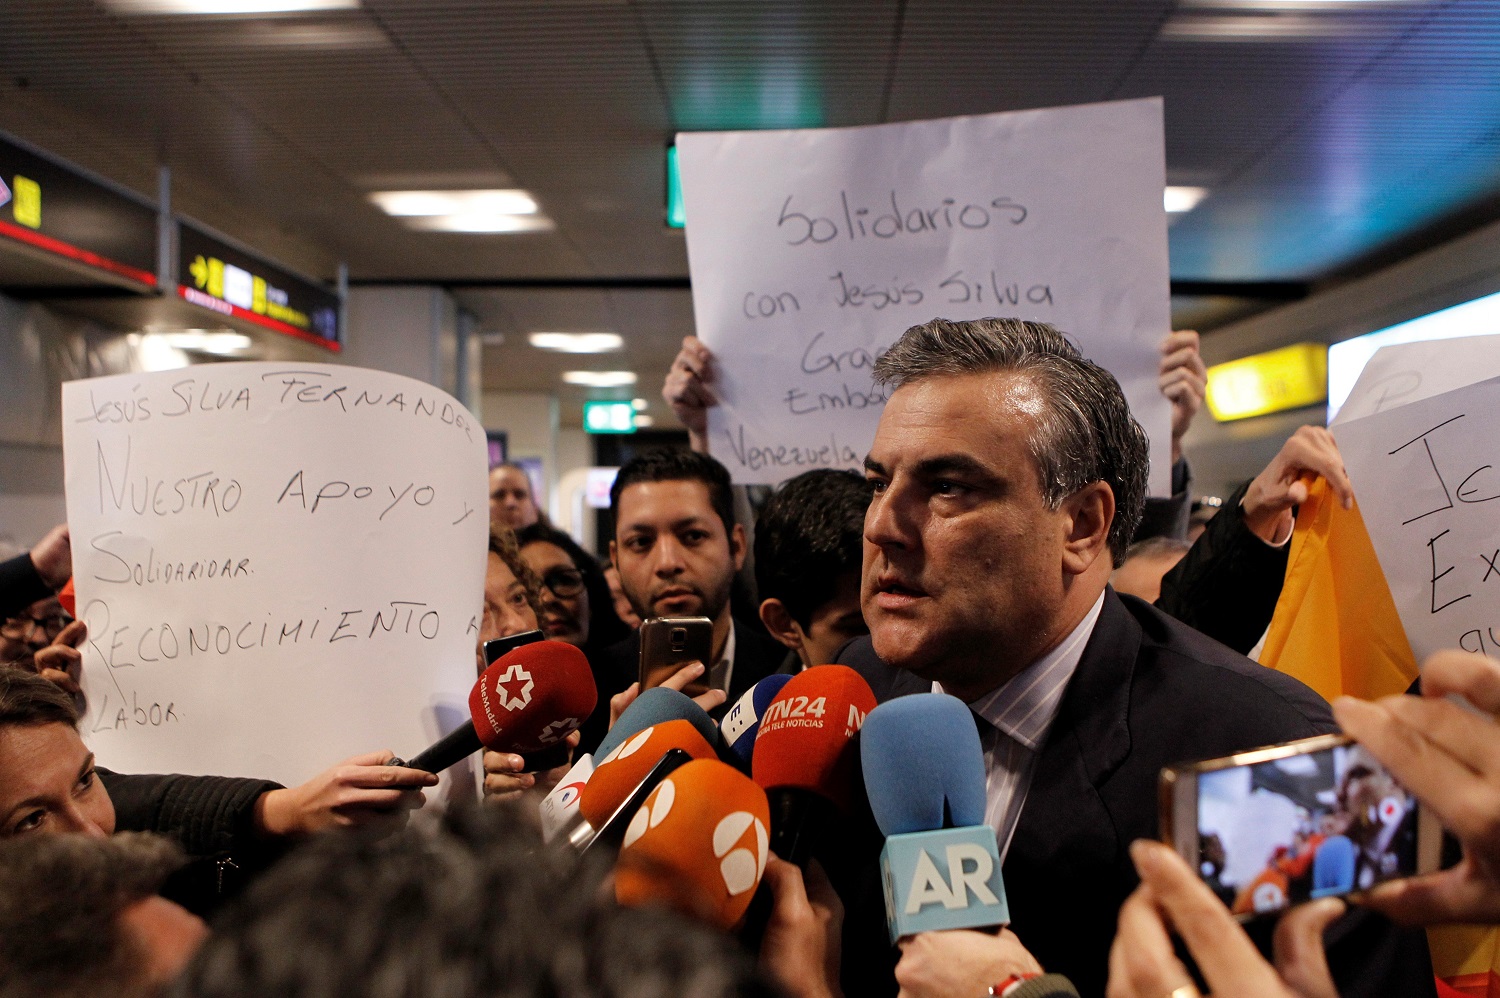 El embajador español expulsado por Maduro llega a Madrid (Fotos)